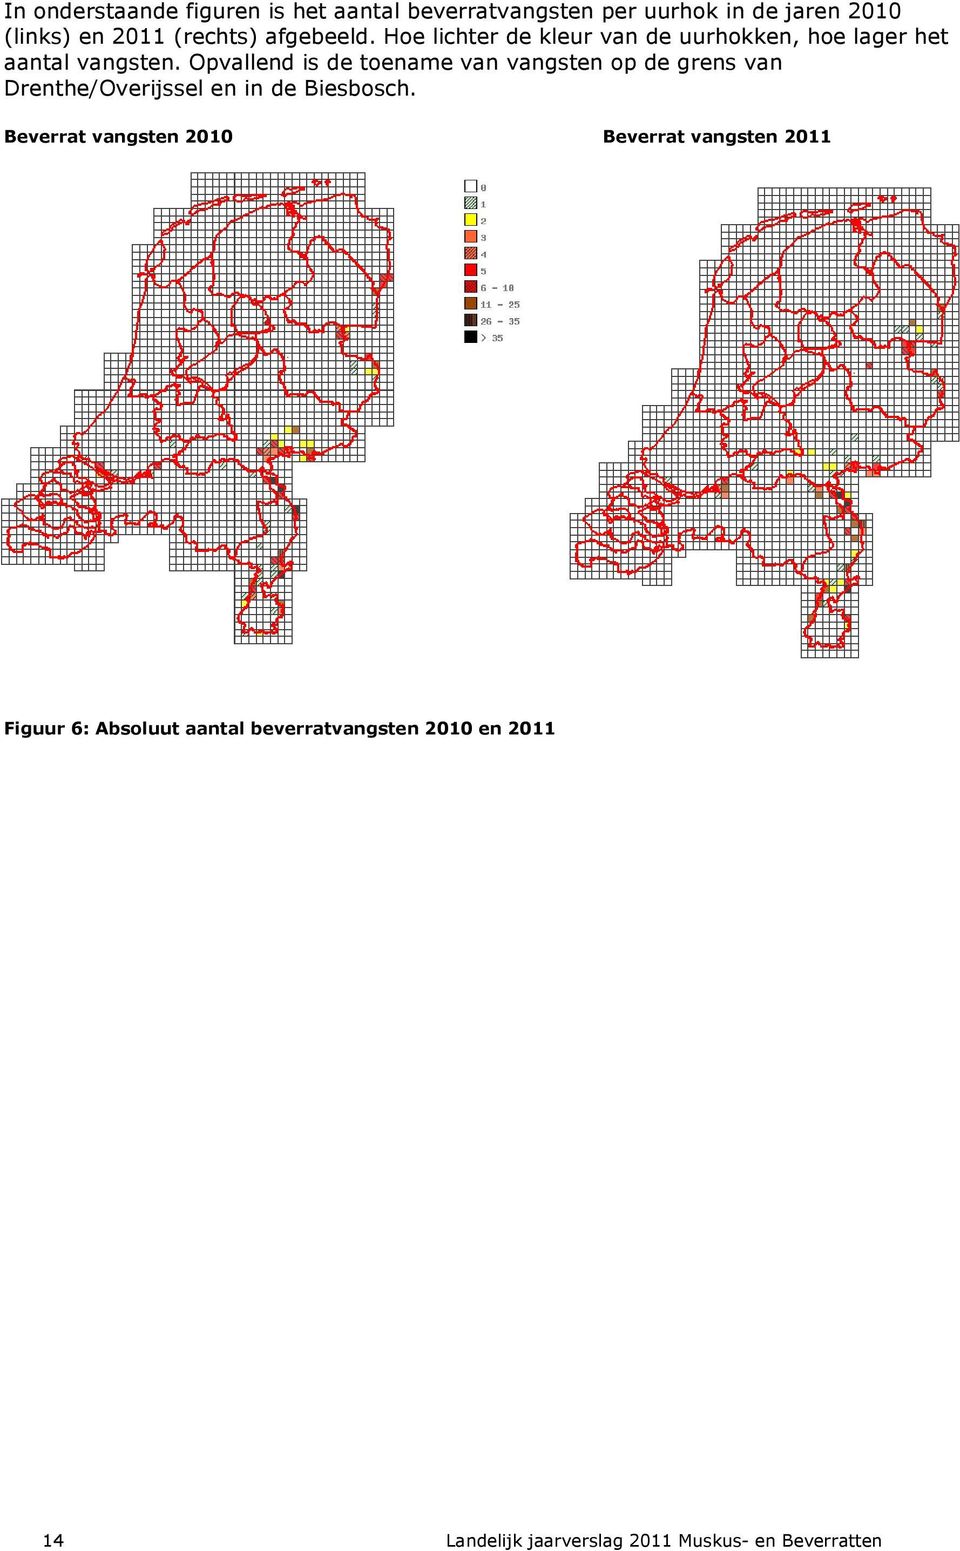 Opvallend is de toename van vangsten op de grens van Drenthe/Overijssel en in de Biesbosch.